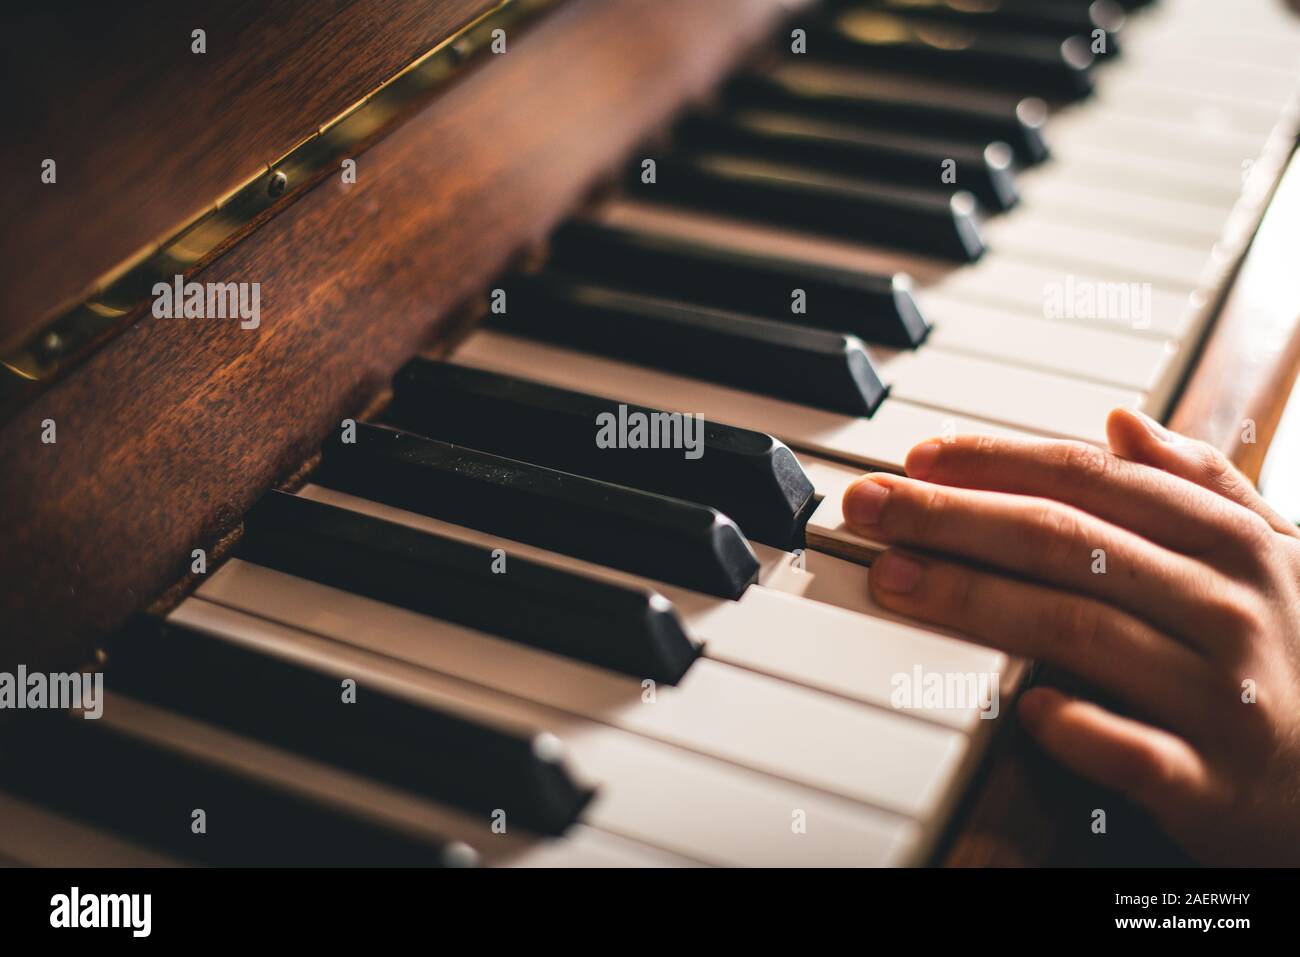 Cerca de los dedos de la mano de un niño descansando sobre las teclas del piano. Foto de stock